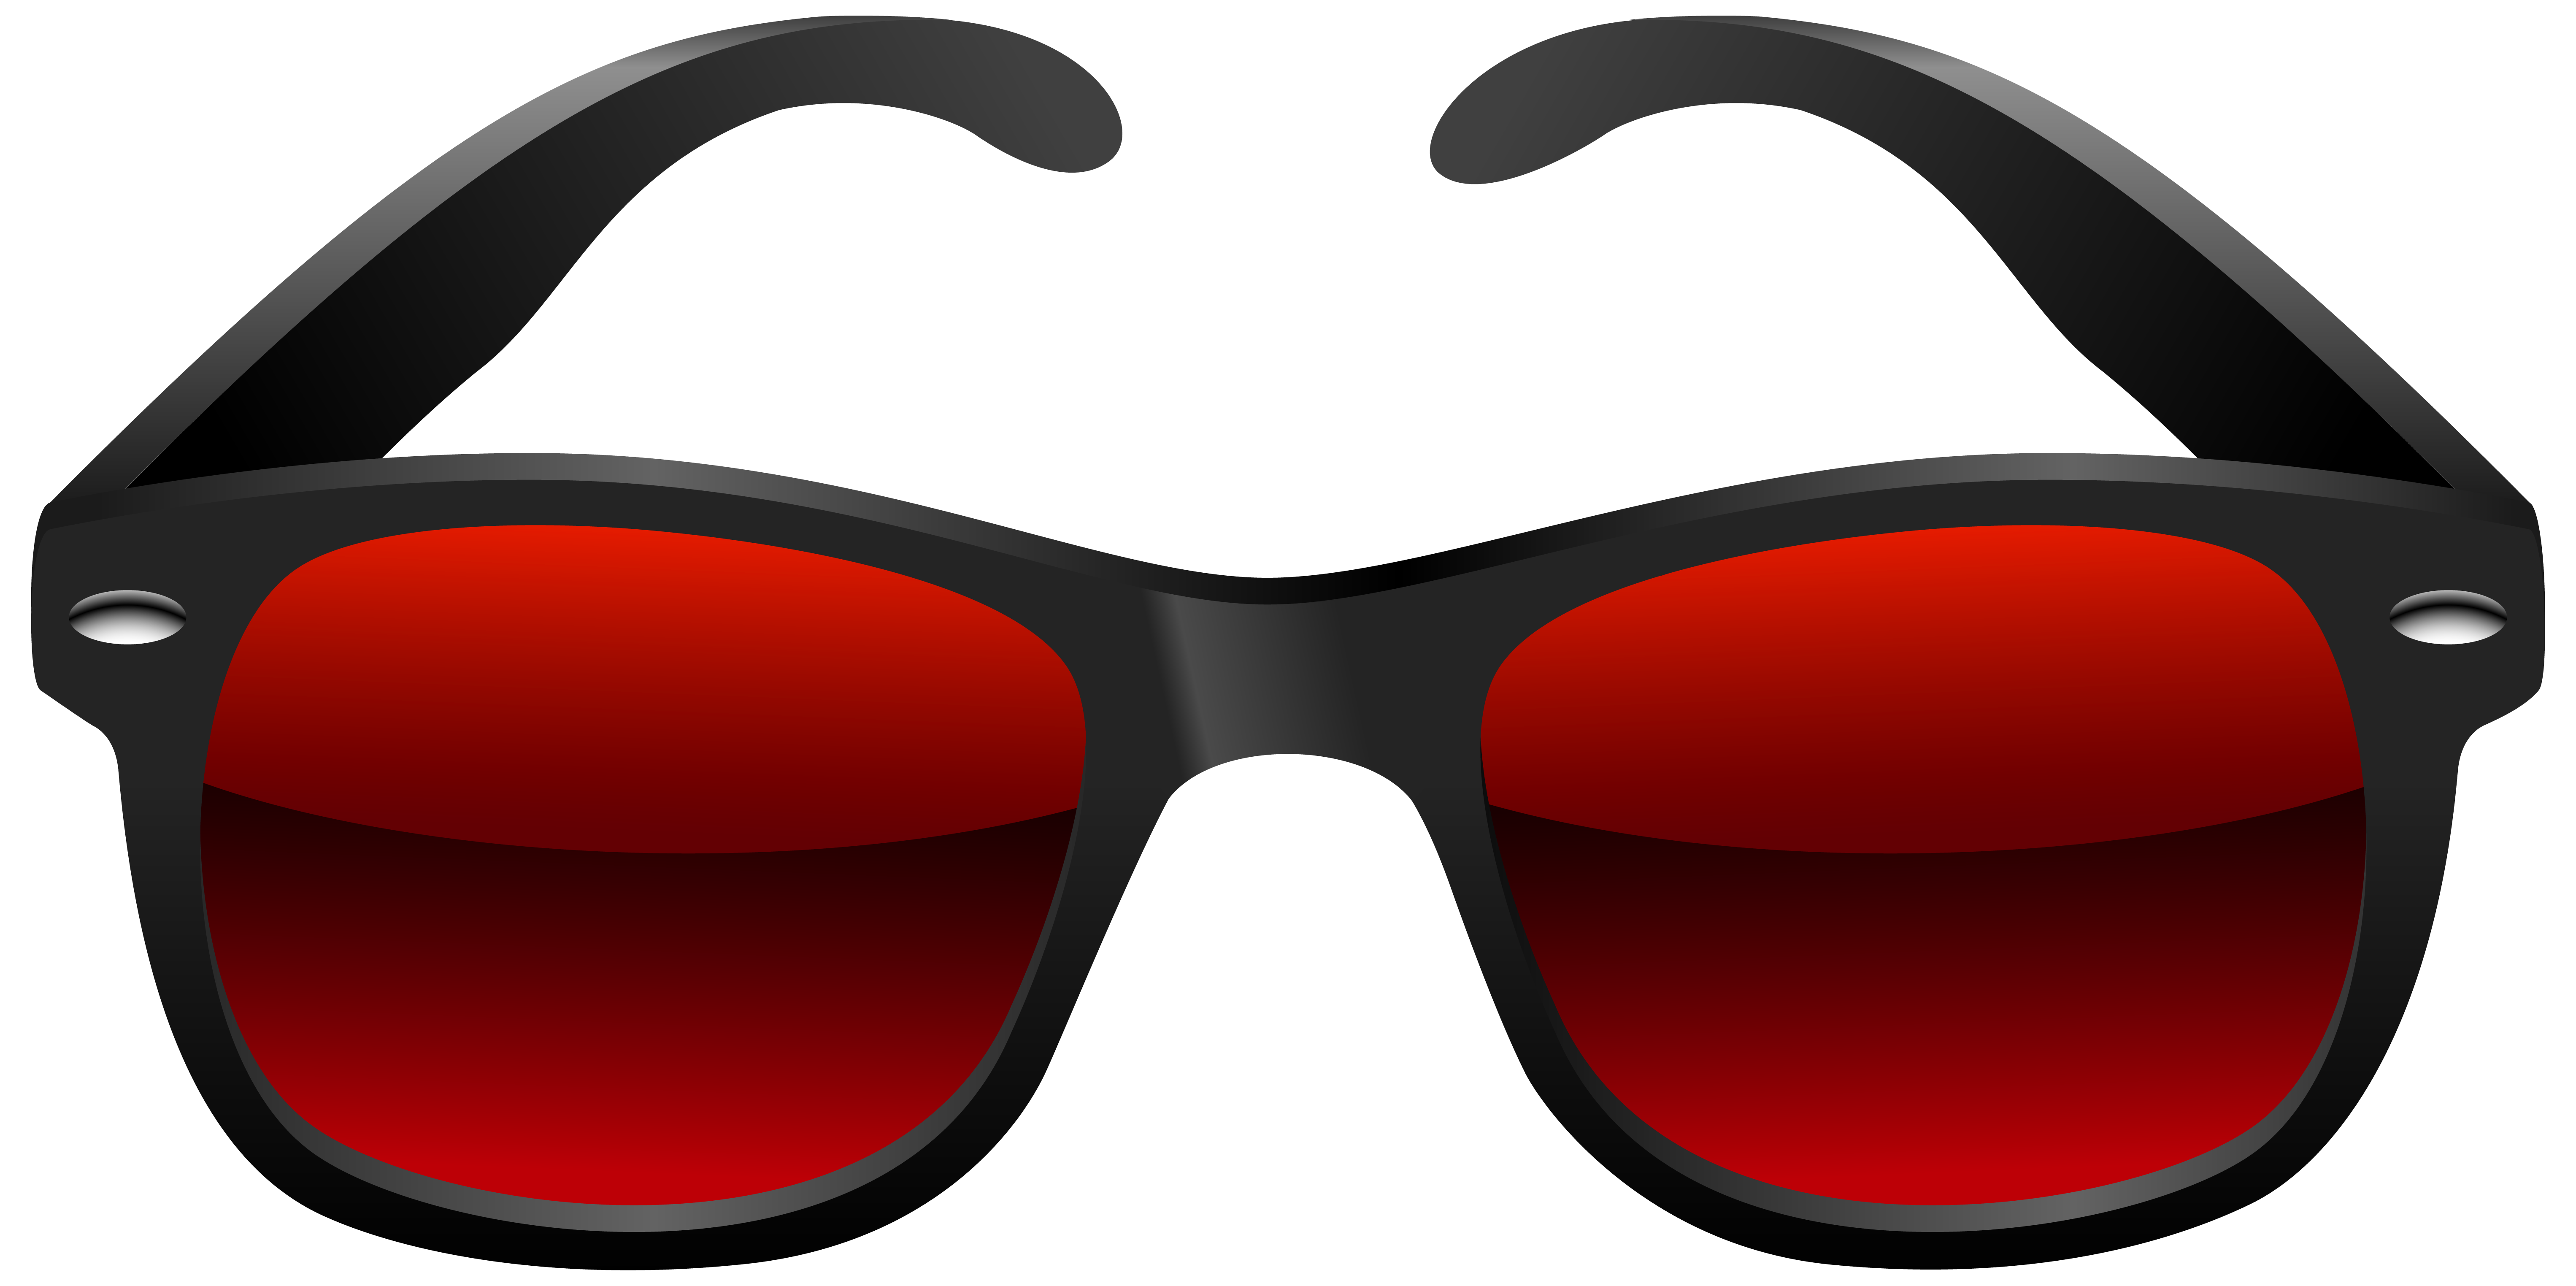 Sunglasses nerdy glasses clip art at clker com vector clip art ...